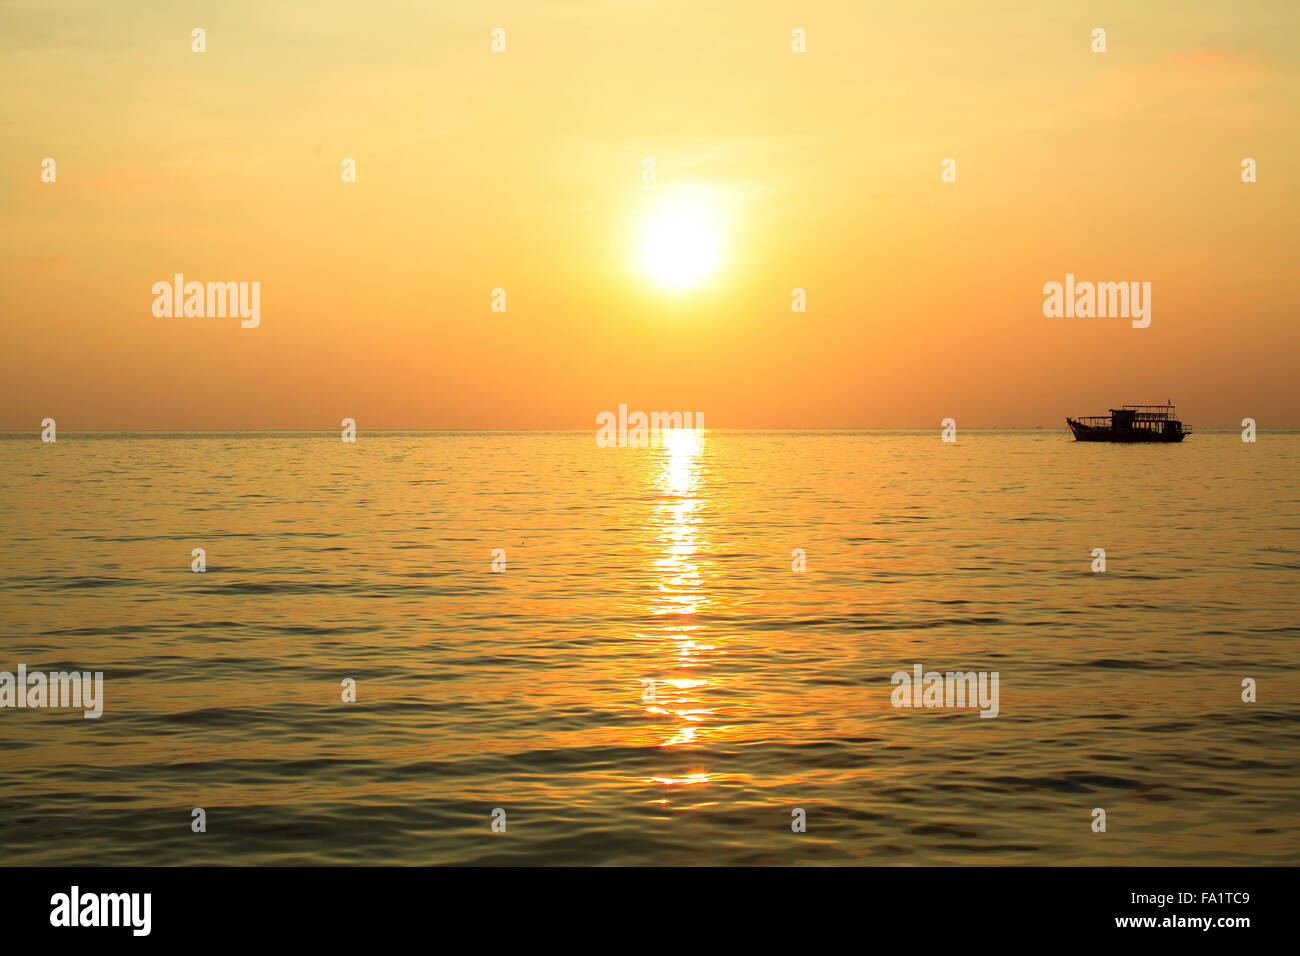 A wonderful sunset at Sea Stock Photo - Alamy